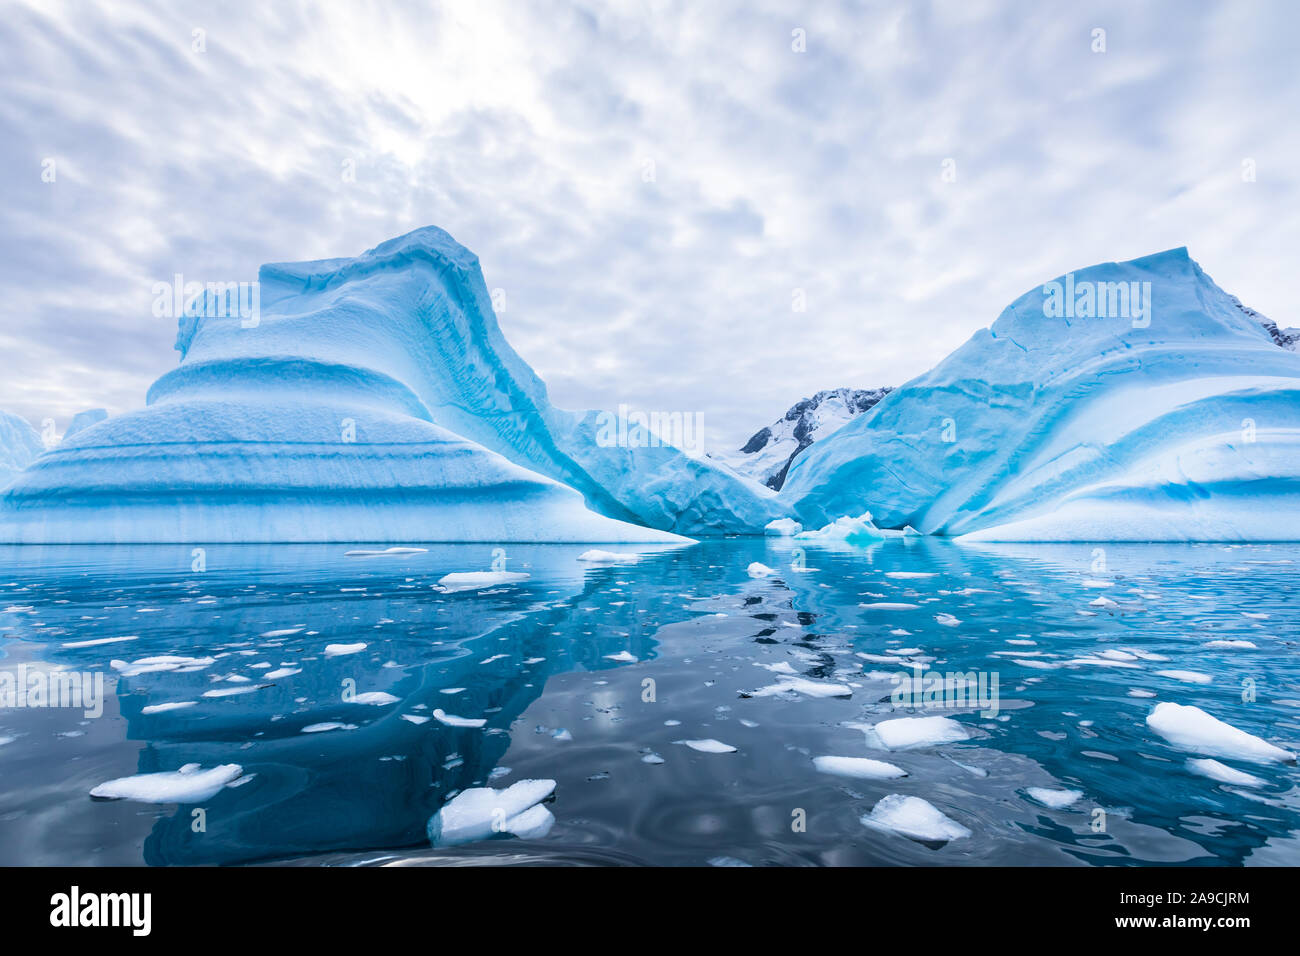 Eisberg in der Antarktis schwimmen im Meer, gefrorene Landschaft mit massive Stücke von Eis auf Wasser reflektierende Oberfläche, Antarktische Halbinsel Stockfoto